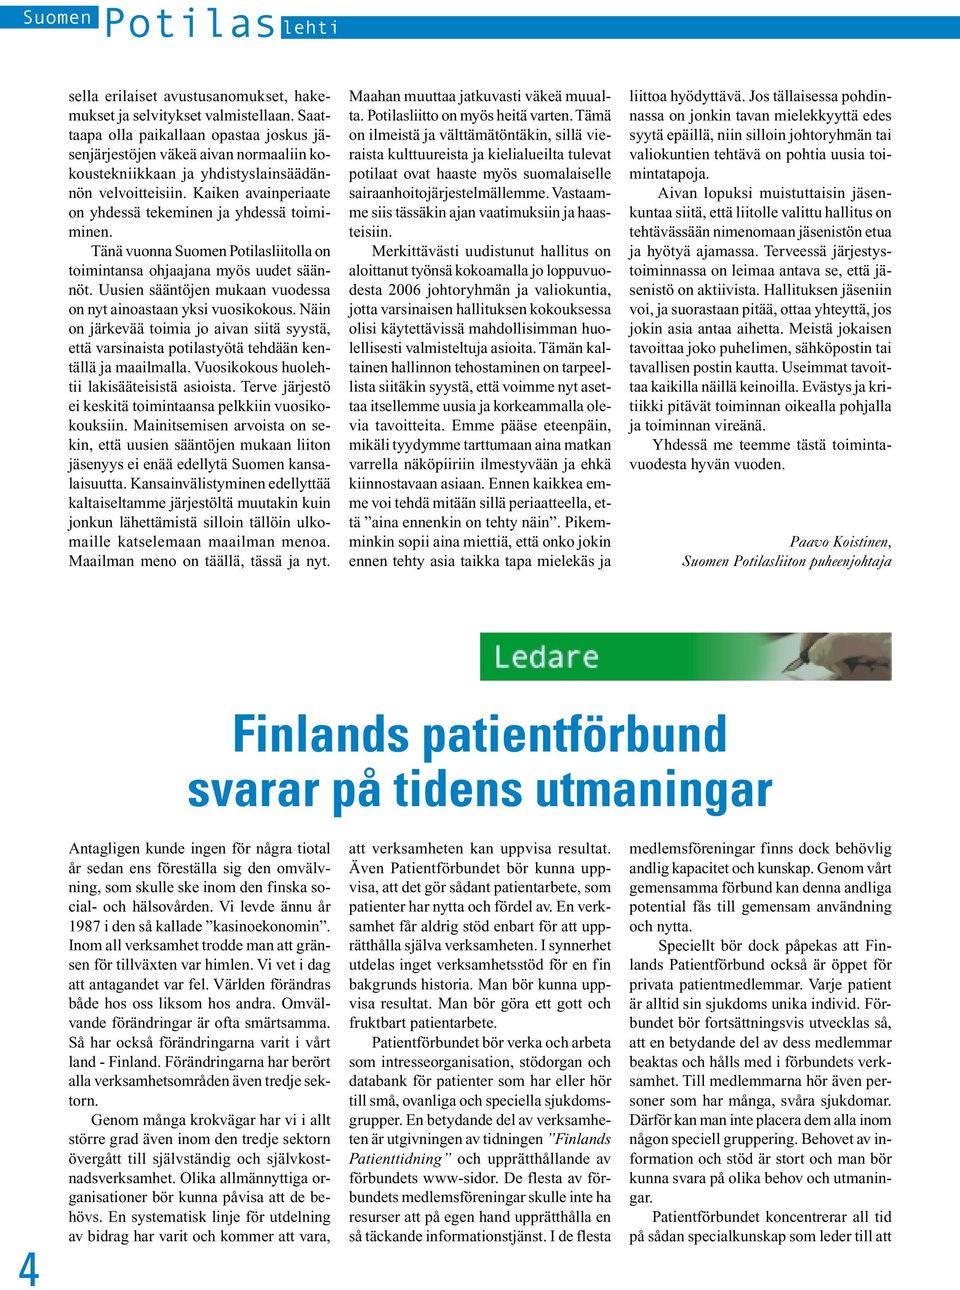 Kaiken avainperiaate on yhdessä tekeminen ja yhdessä toimiminen. Tänä vuonna Suomen Potilasliitolla on toimintansa ohjaajana myös uudet säännöt.